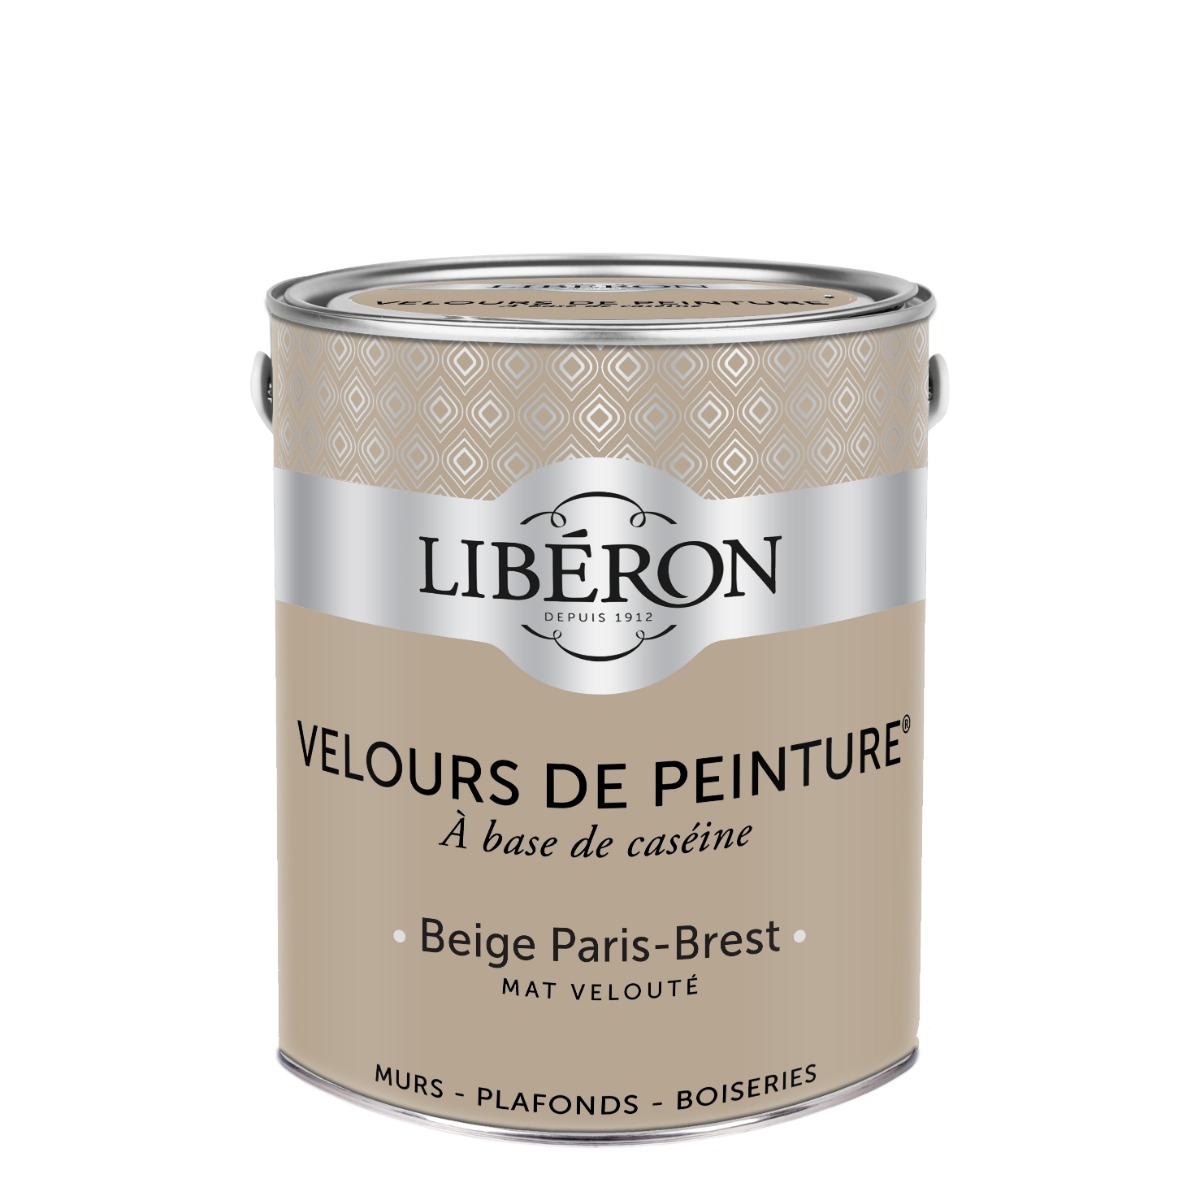 Libéron Velours de peinture Beige Paris Brest